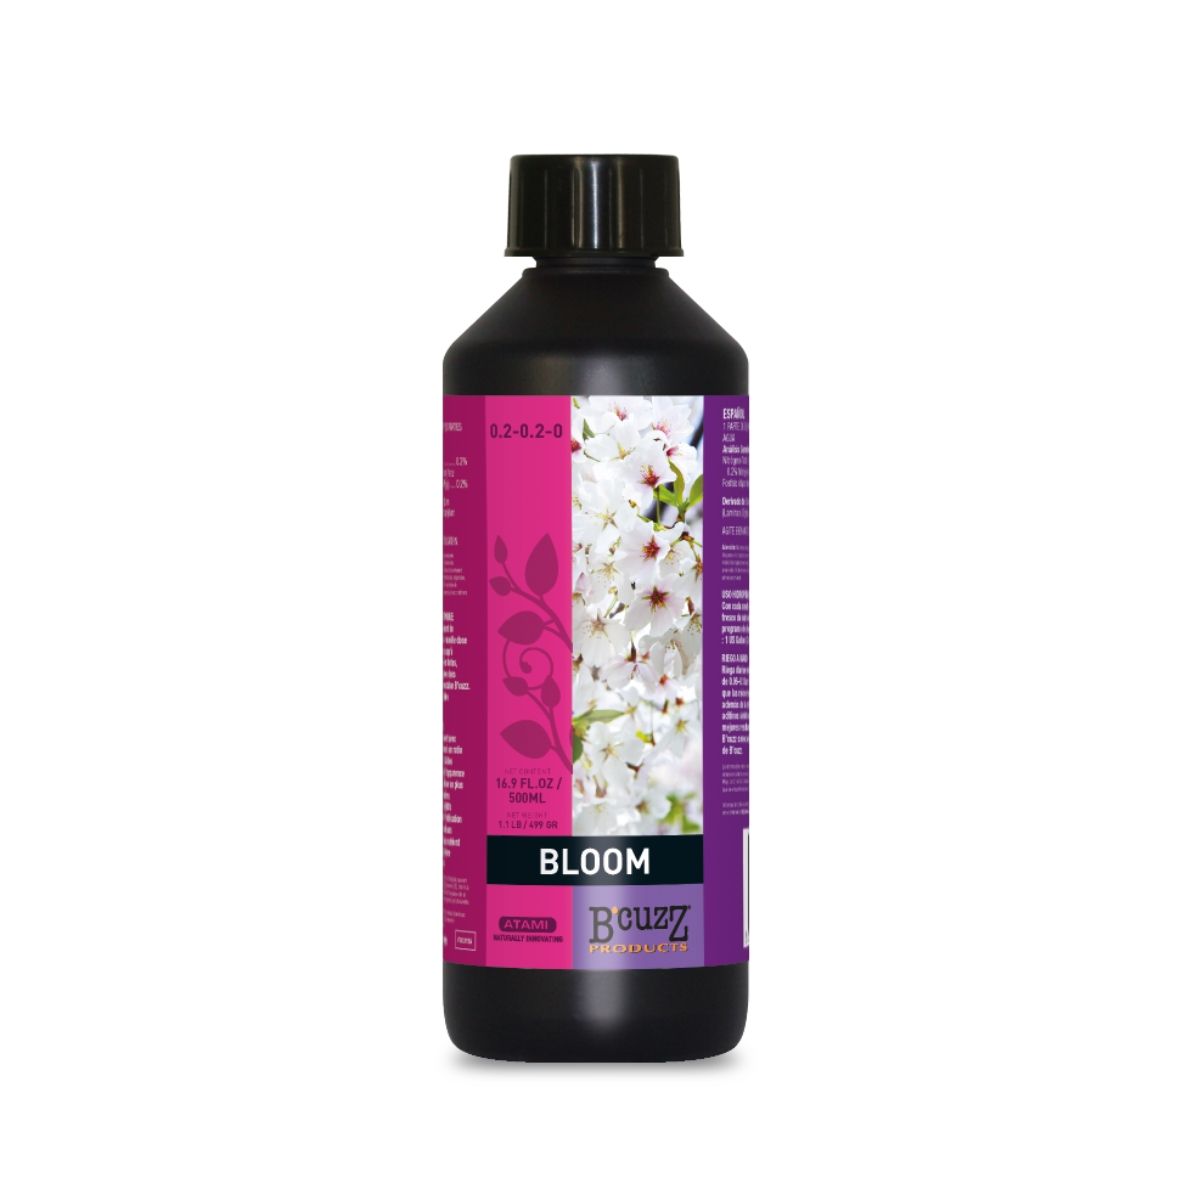 Product Image:Stimulateur de floraison Atami B'Cuzz 500 ml